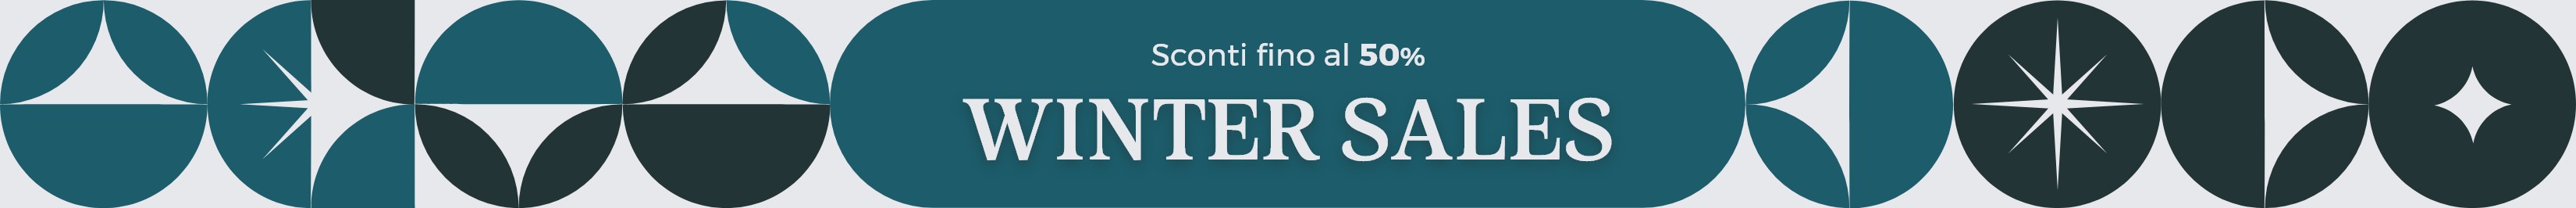 WINTER SALES SCONTI FINO AL 50% SCADE IL 31.01